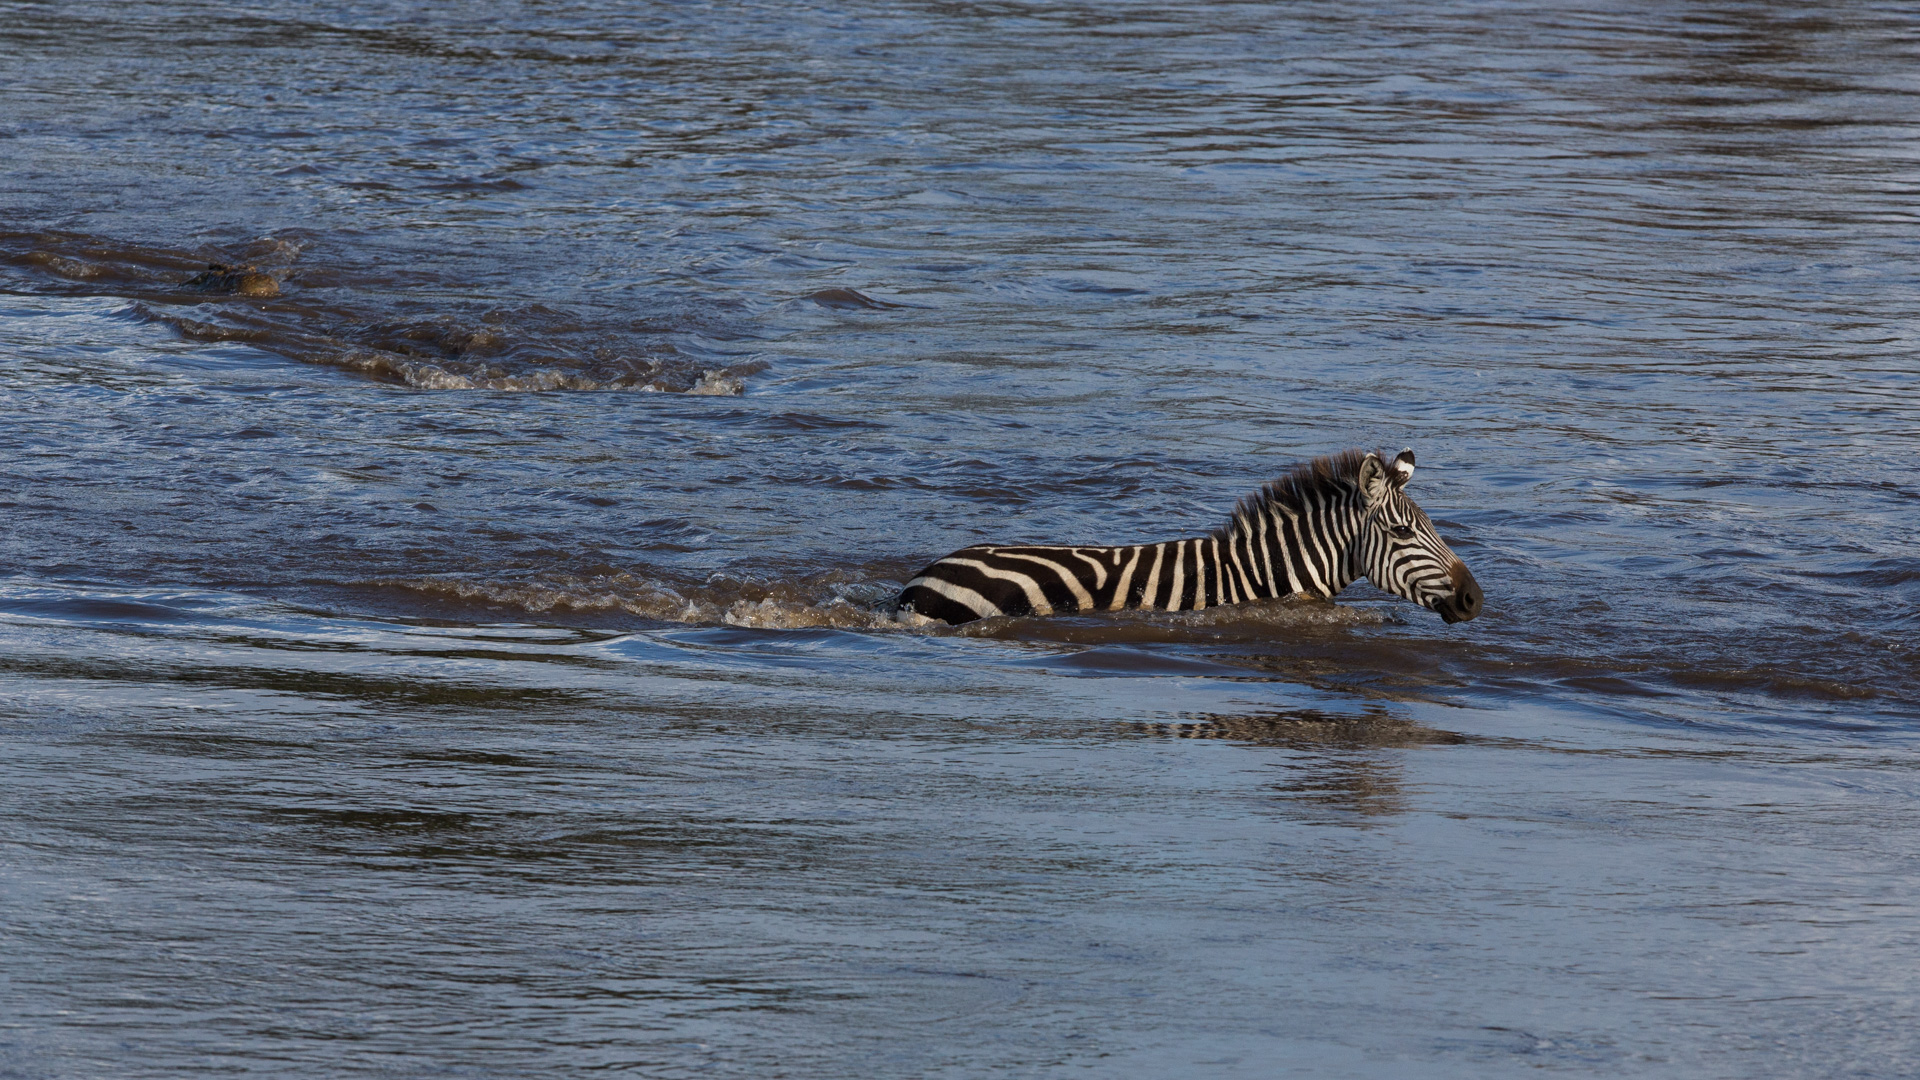 Zebra deep in the river